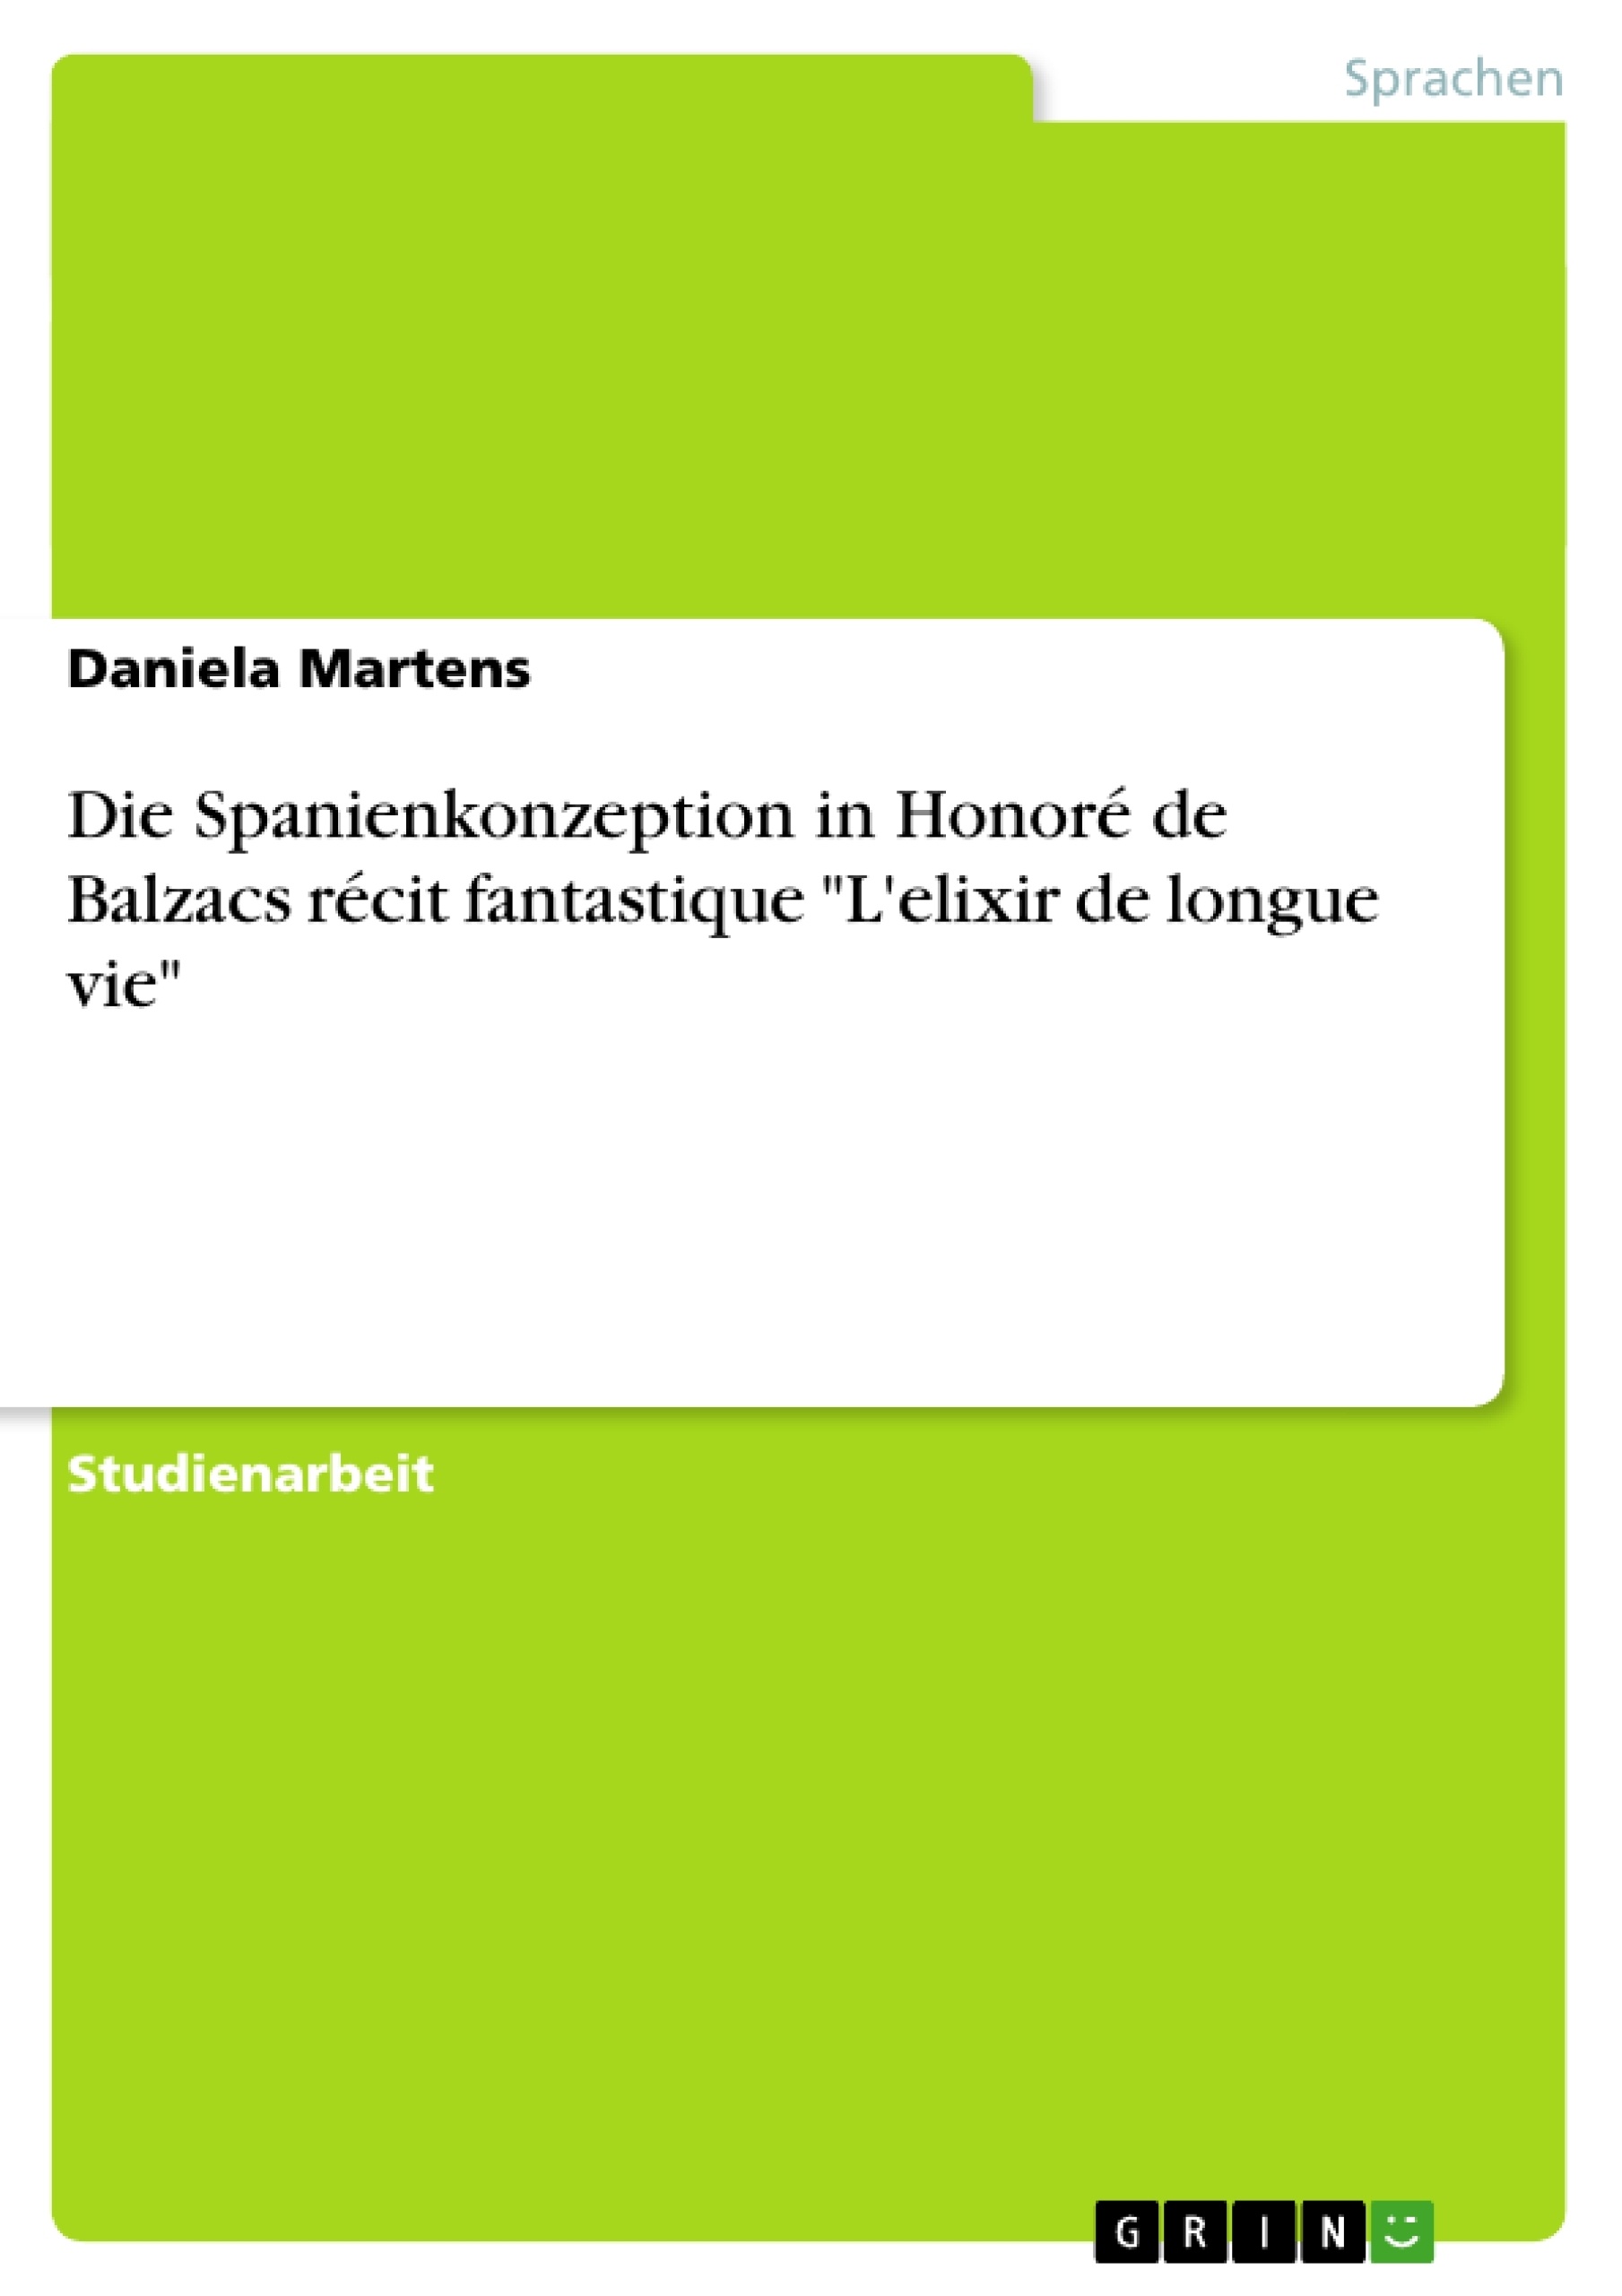 Título: Die Spanienkonzeption in Honoré de Balzacs récit fantastique "L'elixir de longue vie"